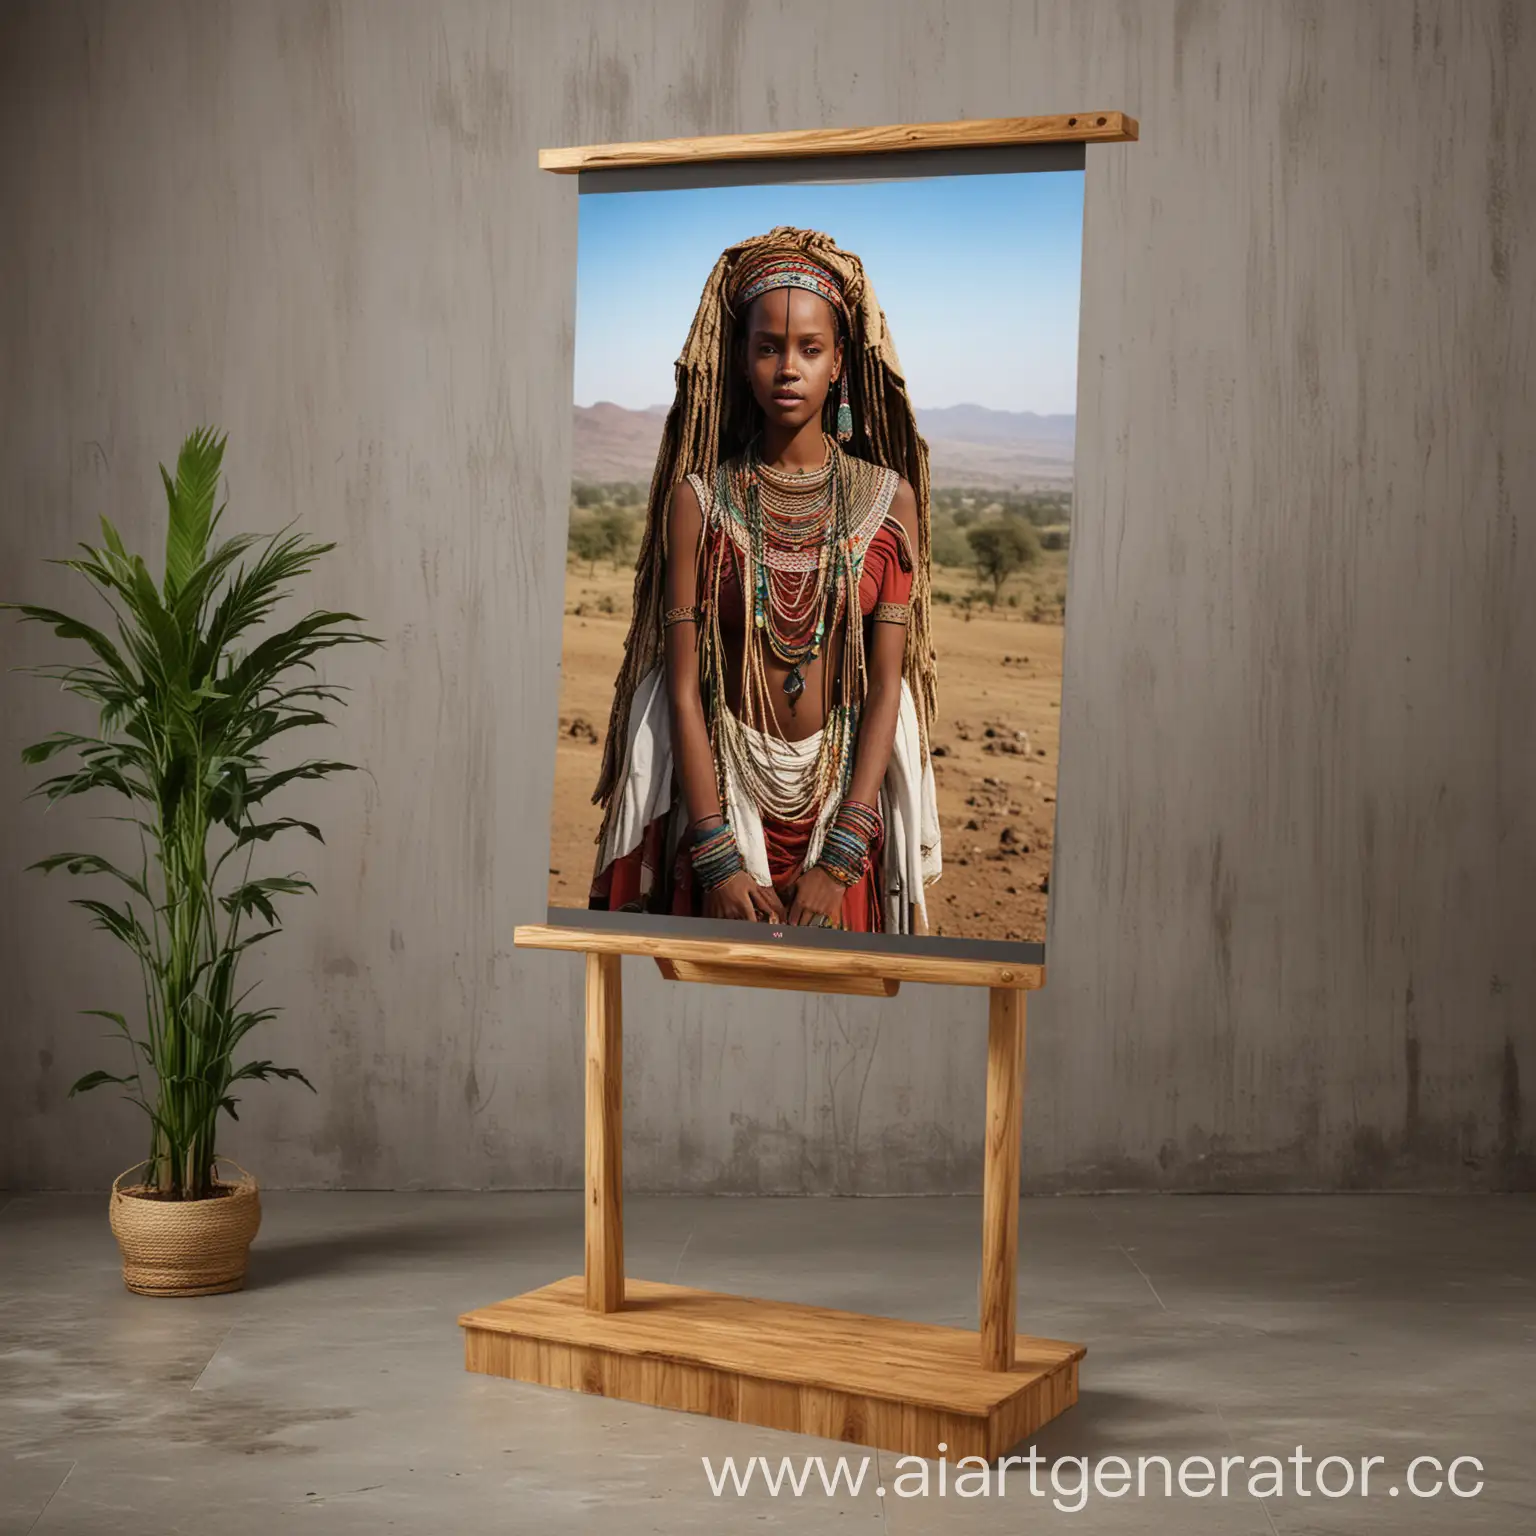 Ethiopian-Culture-Digital-Stand-Vibrant-Representation-of-Ethiopias-Rich-Heritage